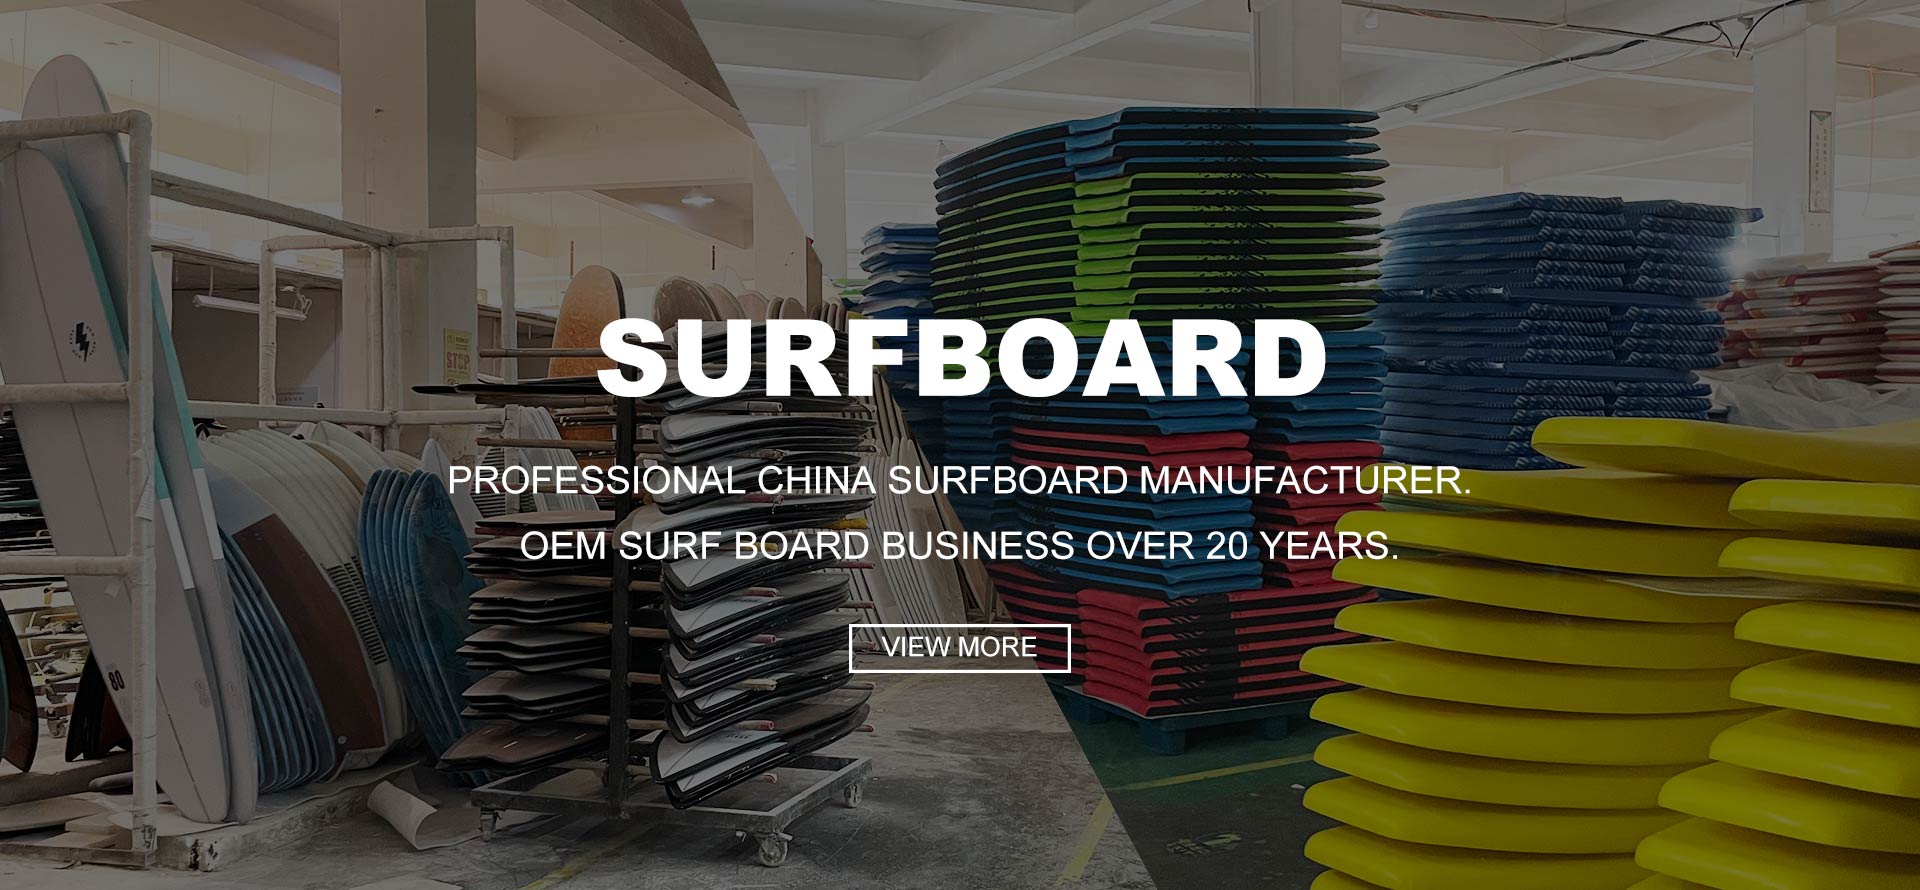 चीन शीतल शीर्ष सर्फ़बोर्ड निर्माता